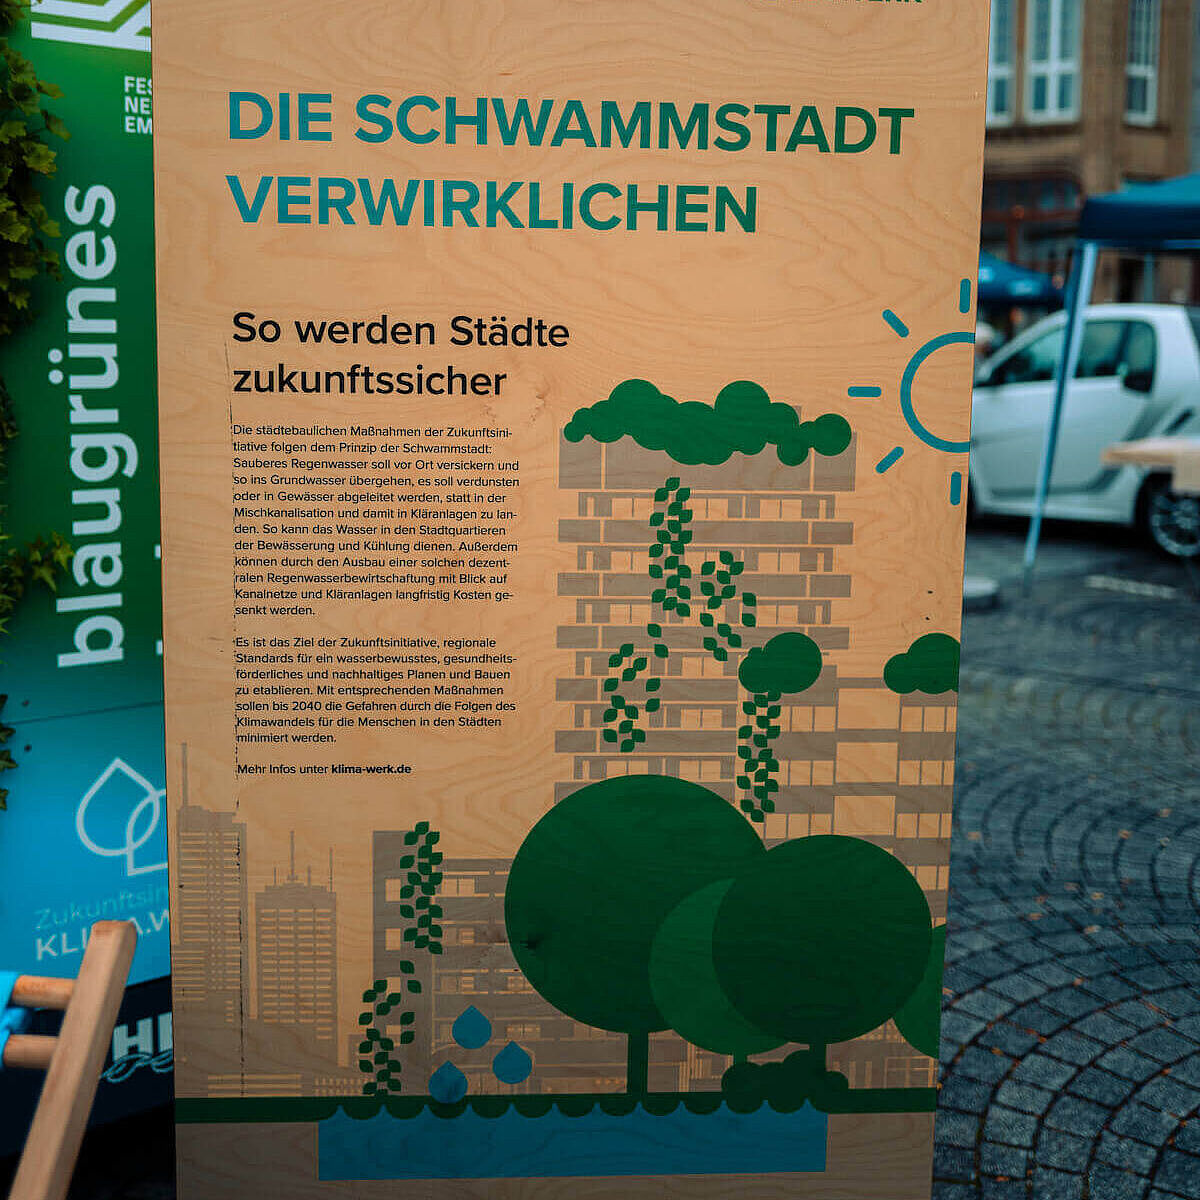 Holzschild auf dem KliMarkt mit Erklärung zur Schwammstadt.